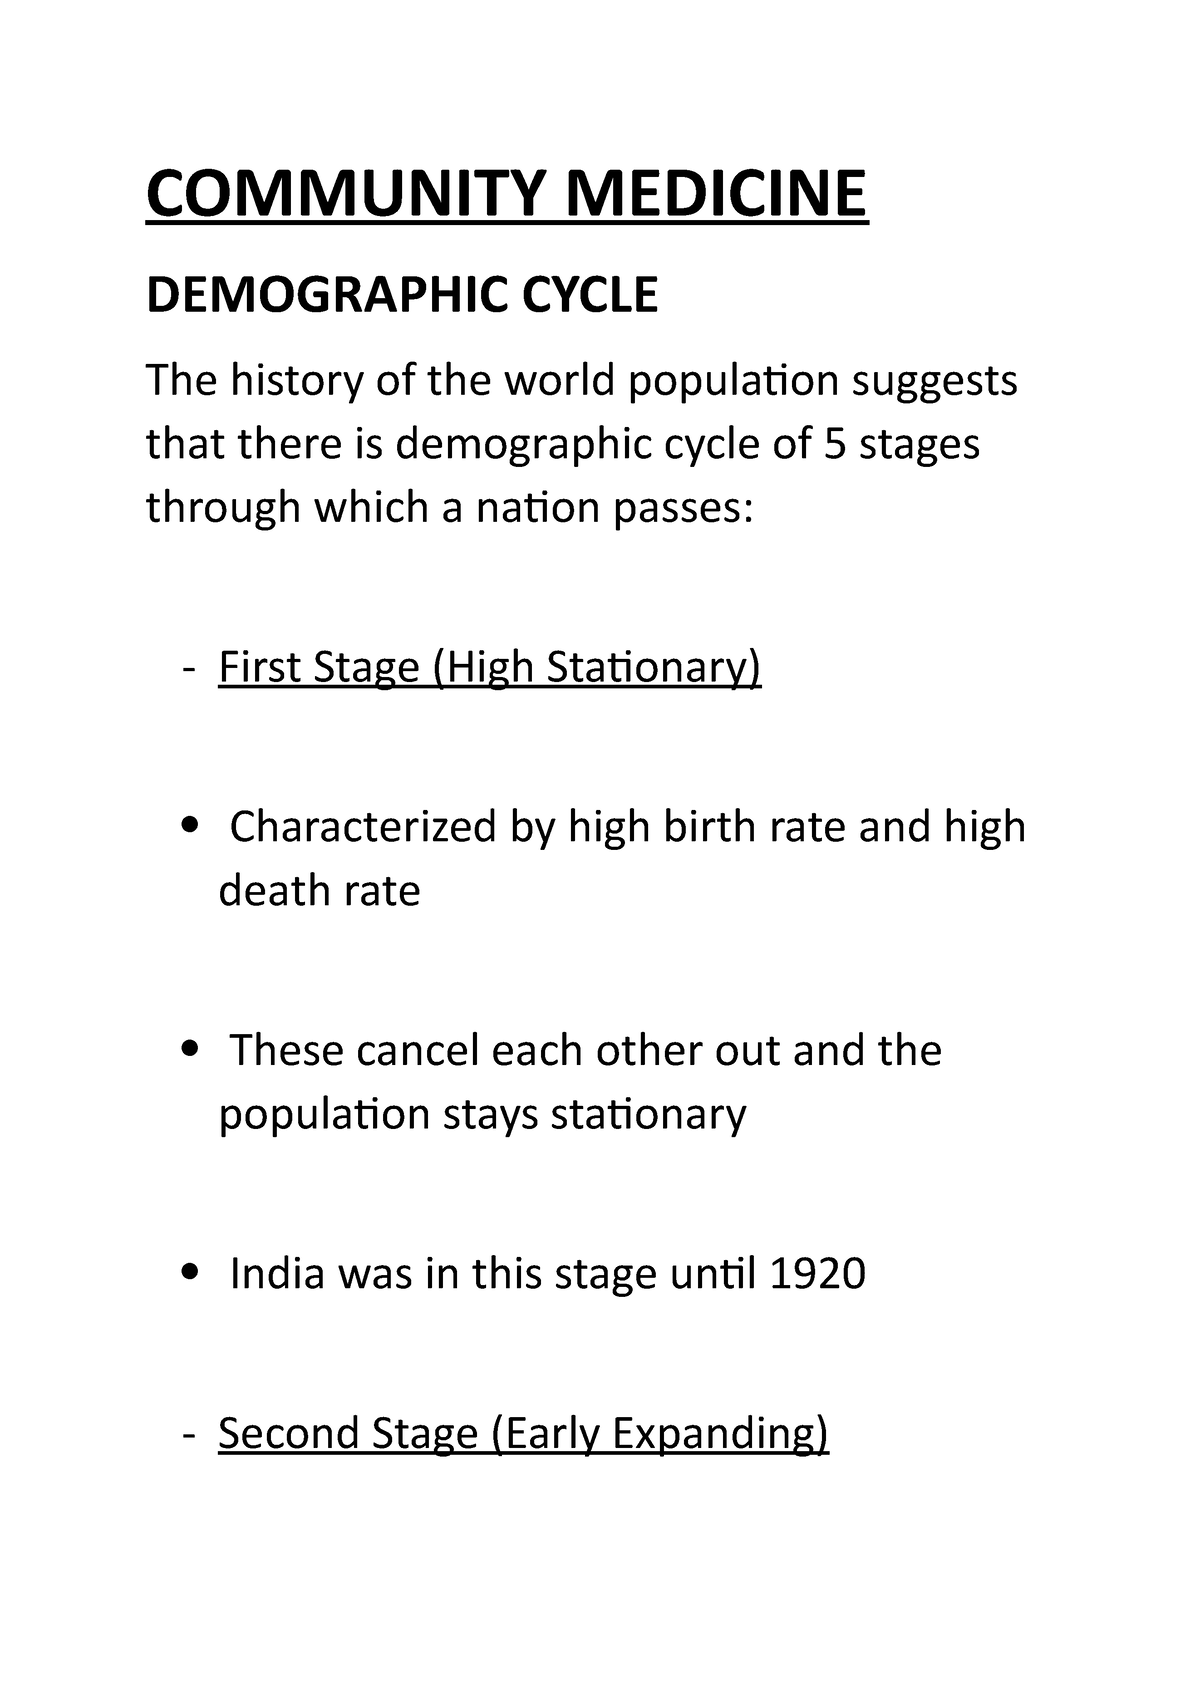 demographic cycle essay grade 10